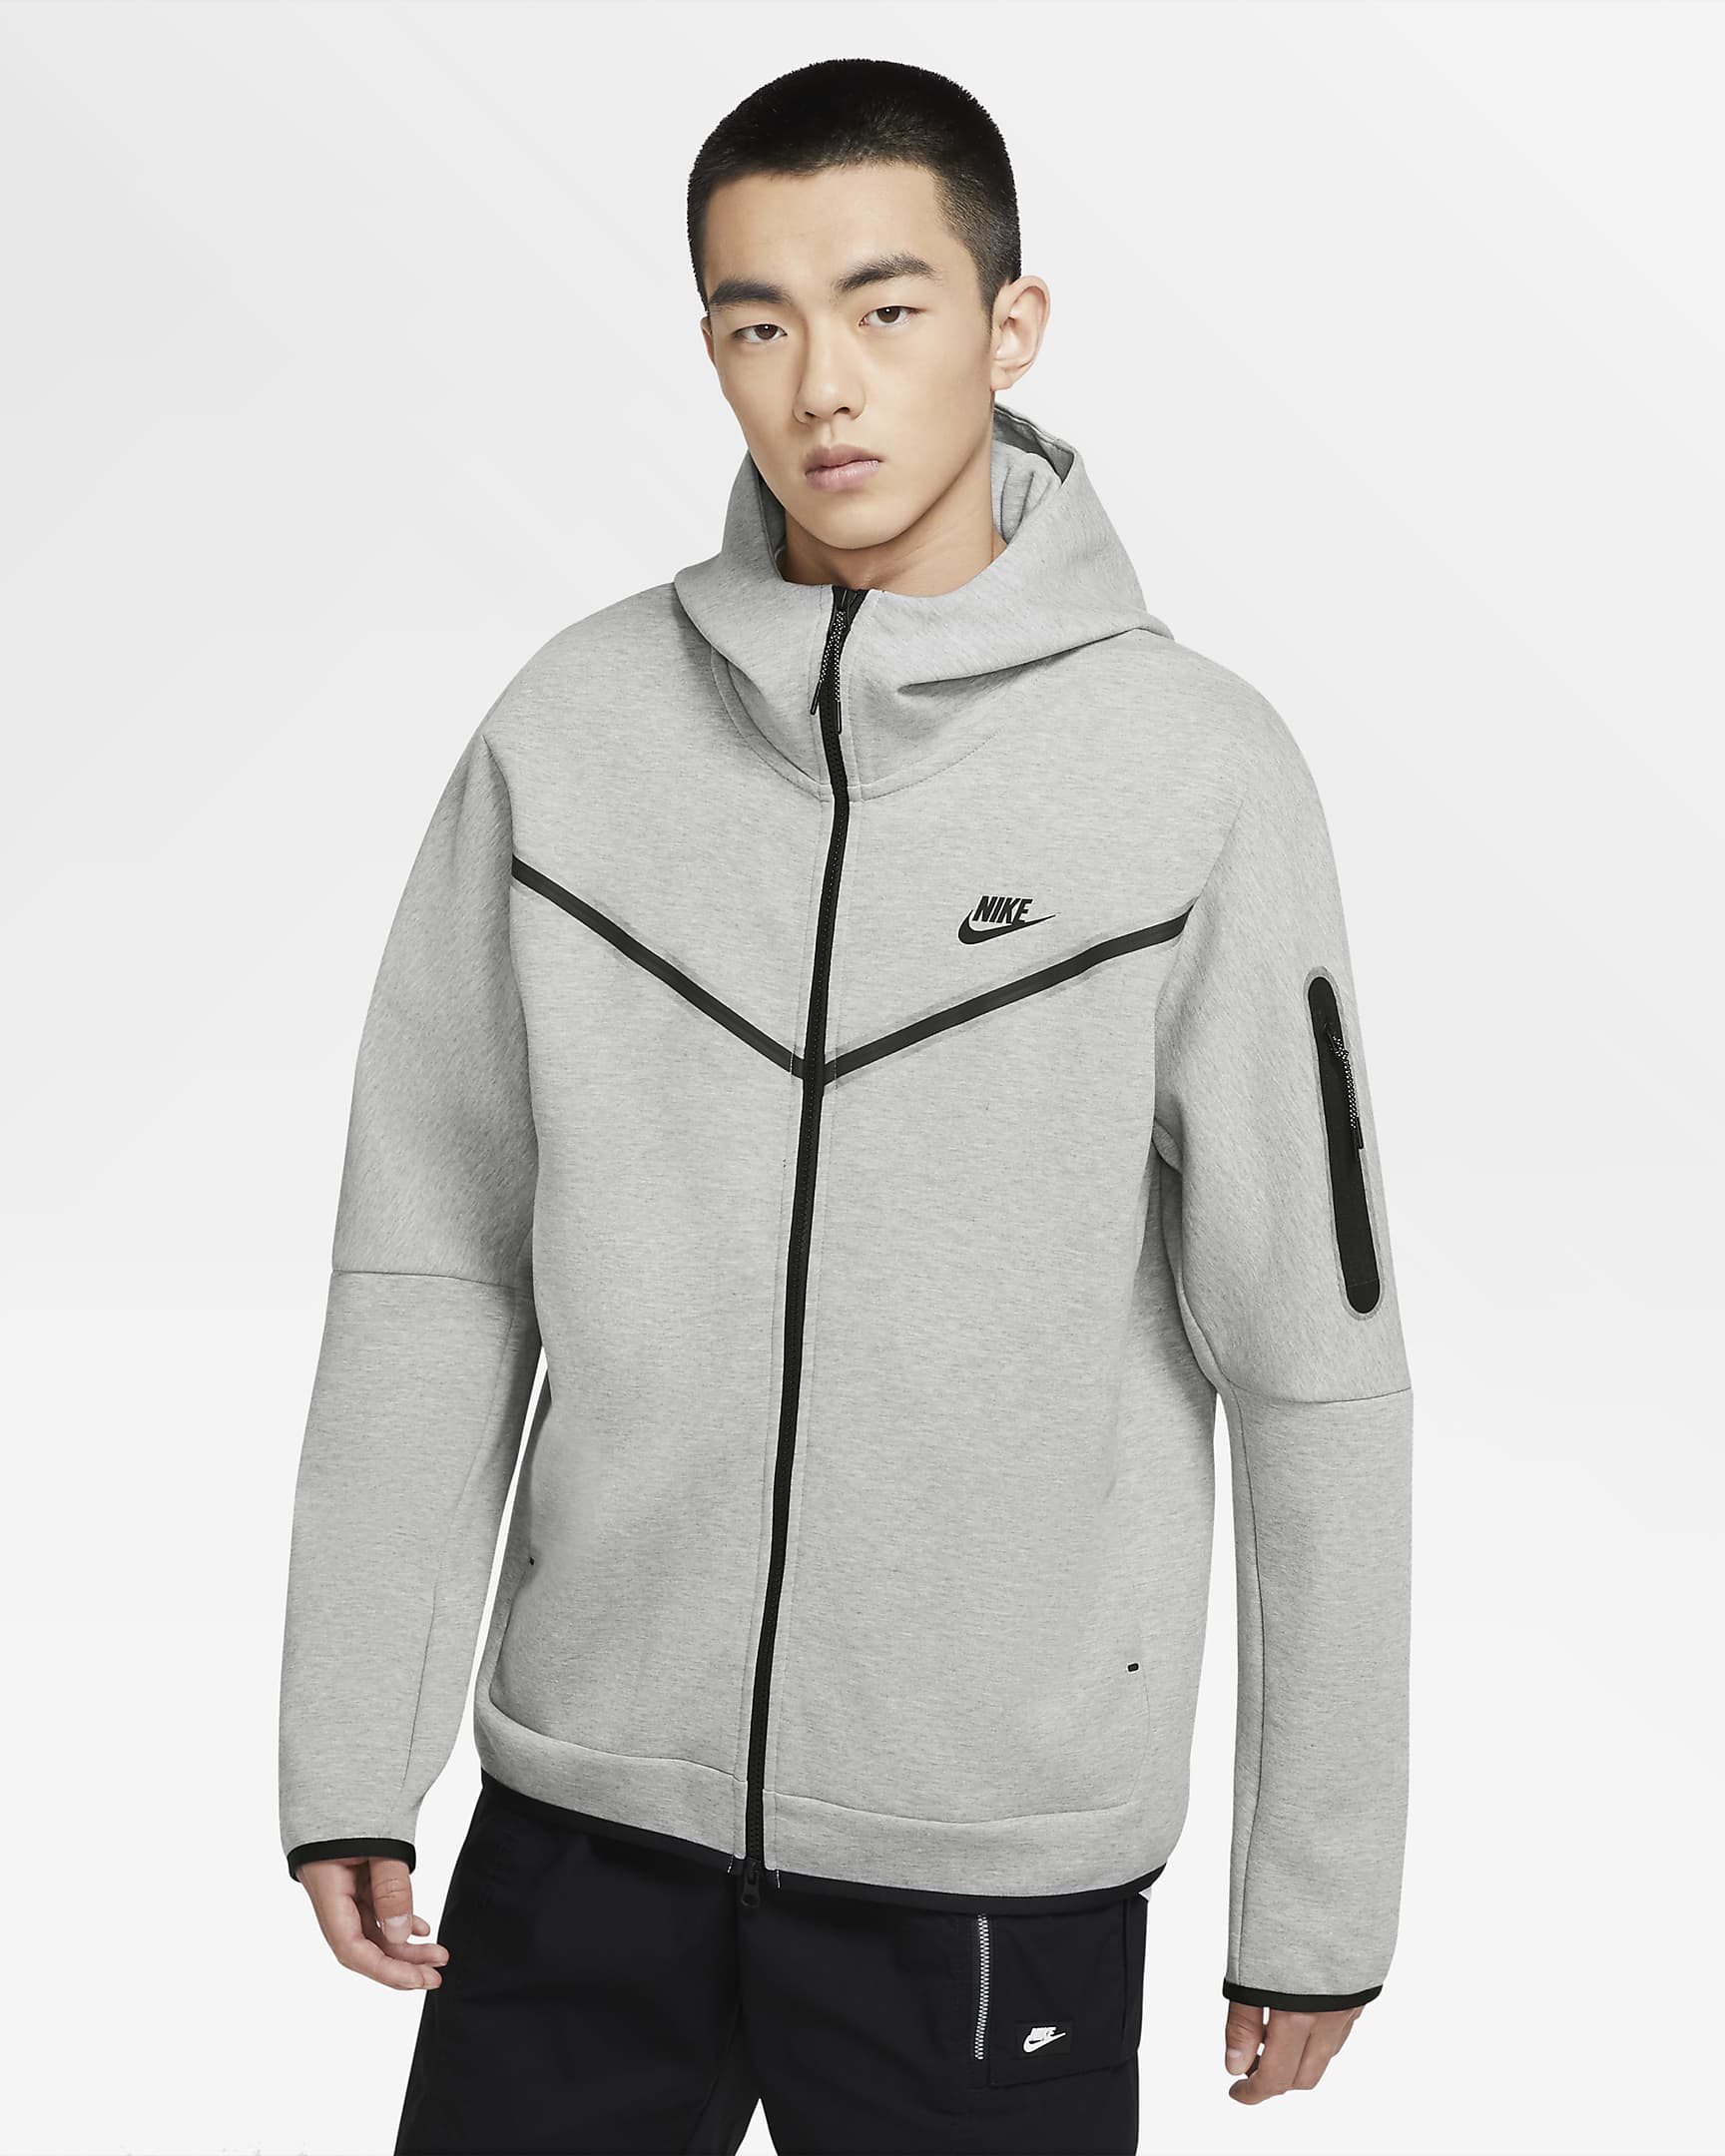 nike-sportswear-tech-fleece-mens-full-zip-hoodie-5ZtTtk.png